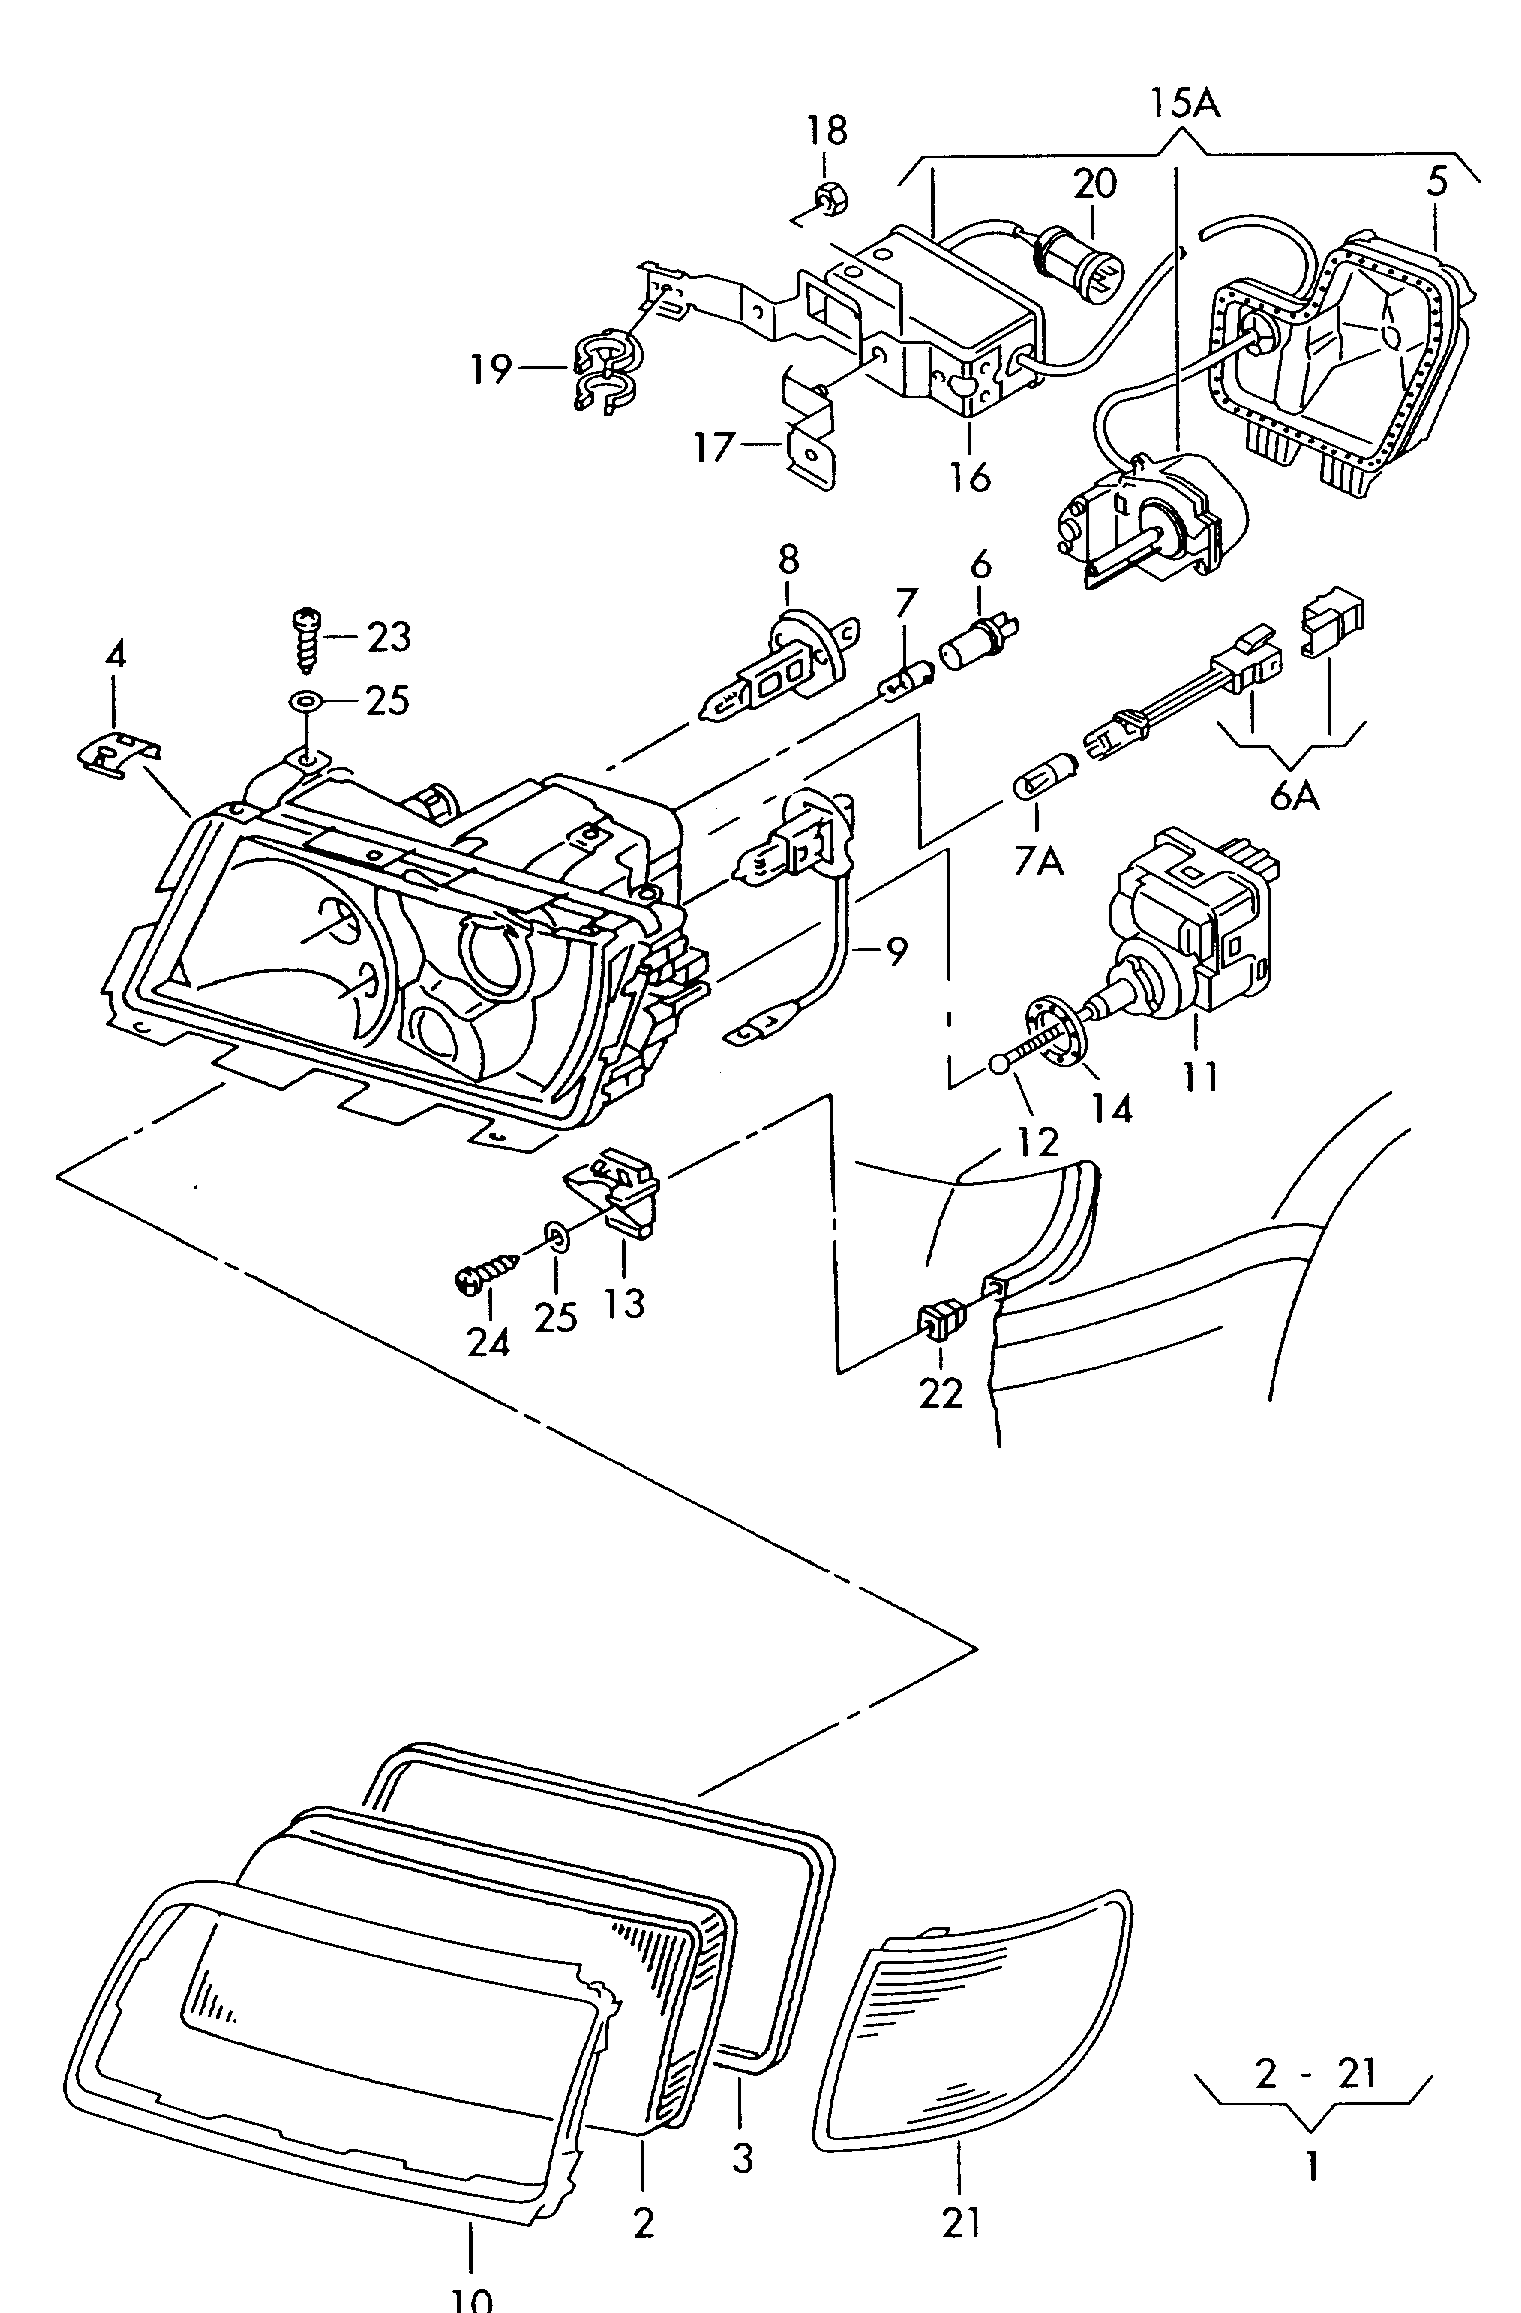 ハロゲントリプルヘッドライト;
ガスディスチャージランプ付き; (右側通行 のみ) - Audi A6/S6/Avant quattro(A6Q)  